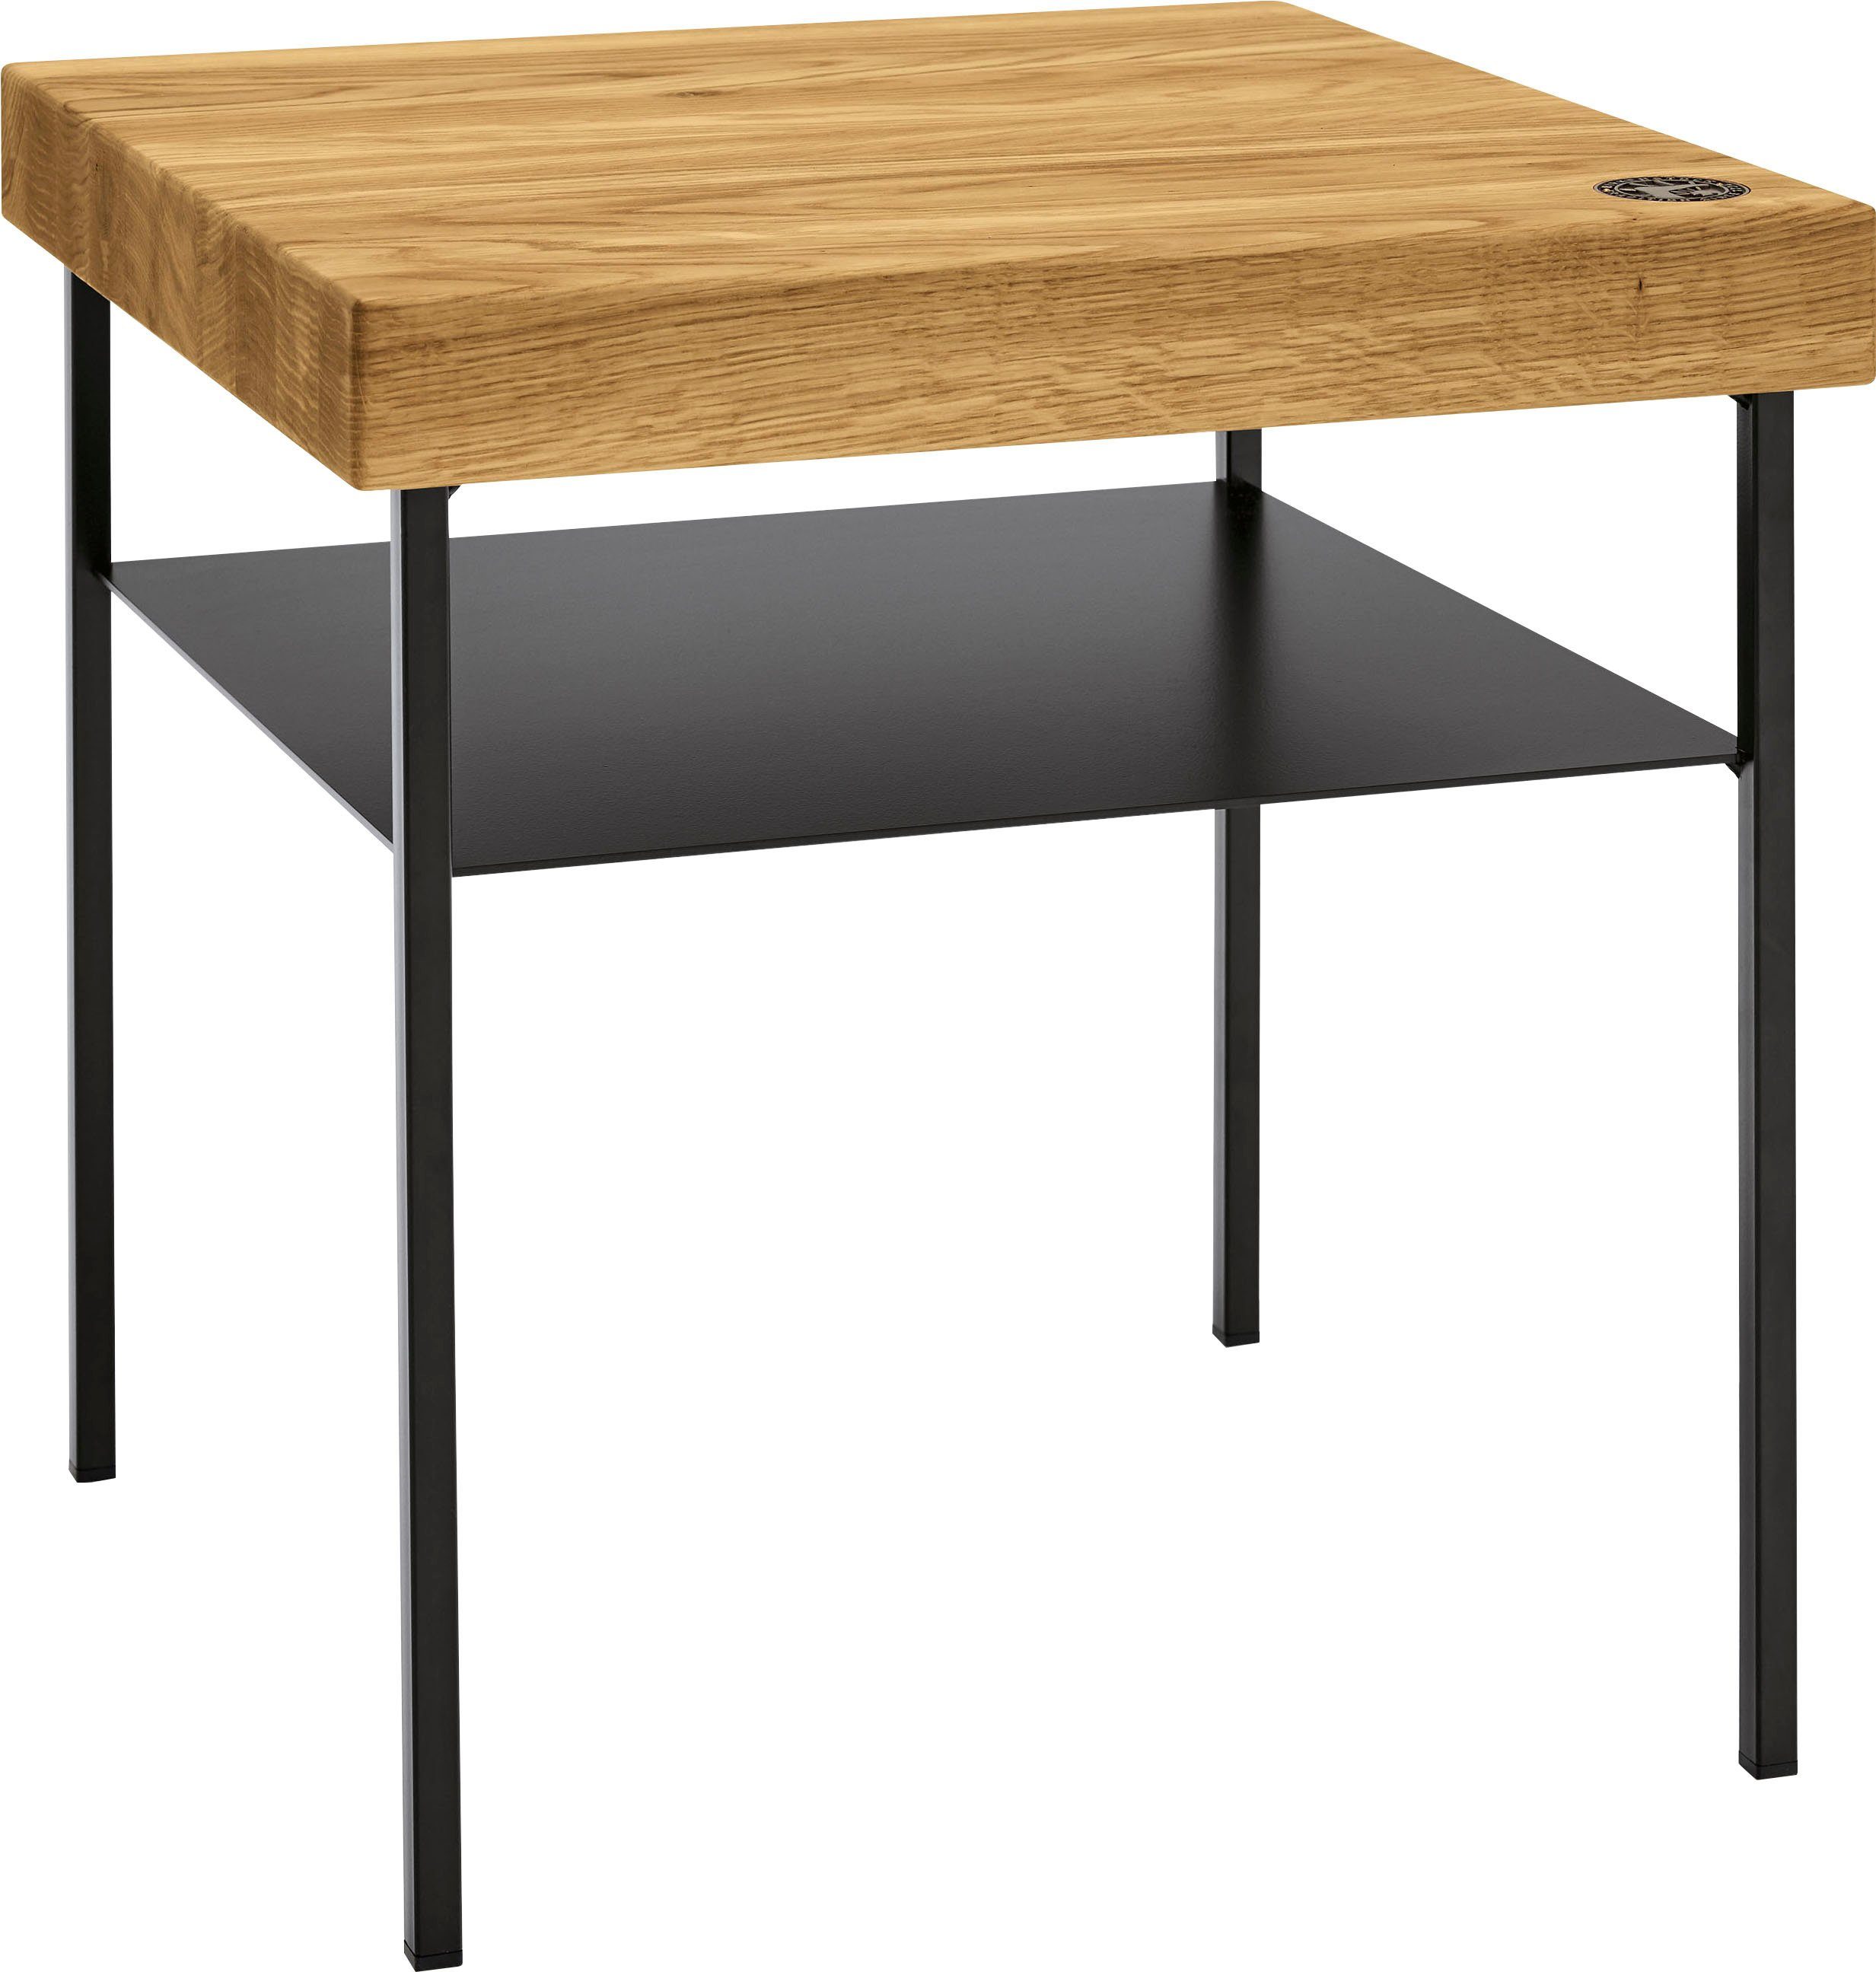 Birkenstock Nachttisch Iona, mit Massivholz-Tischplatte & Metall-Ablage